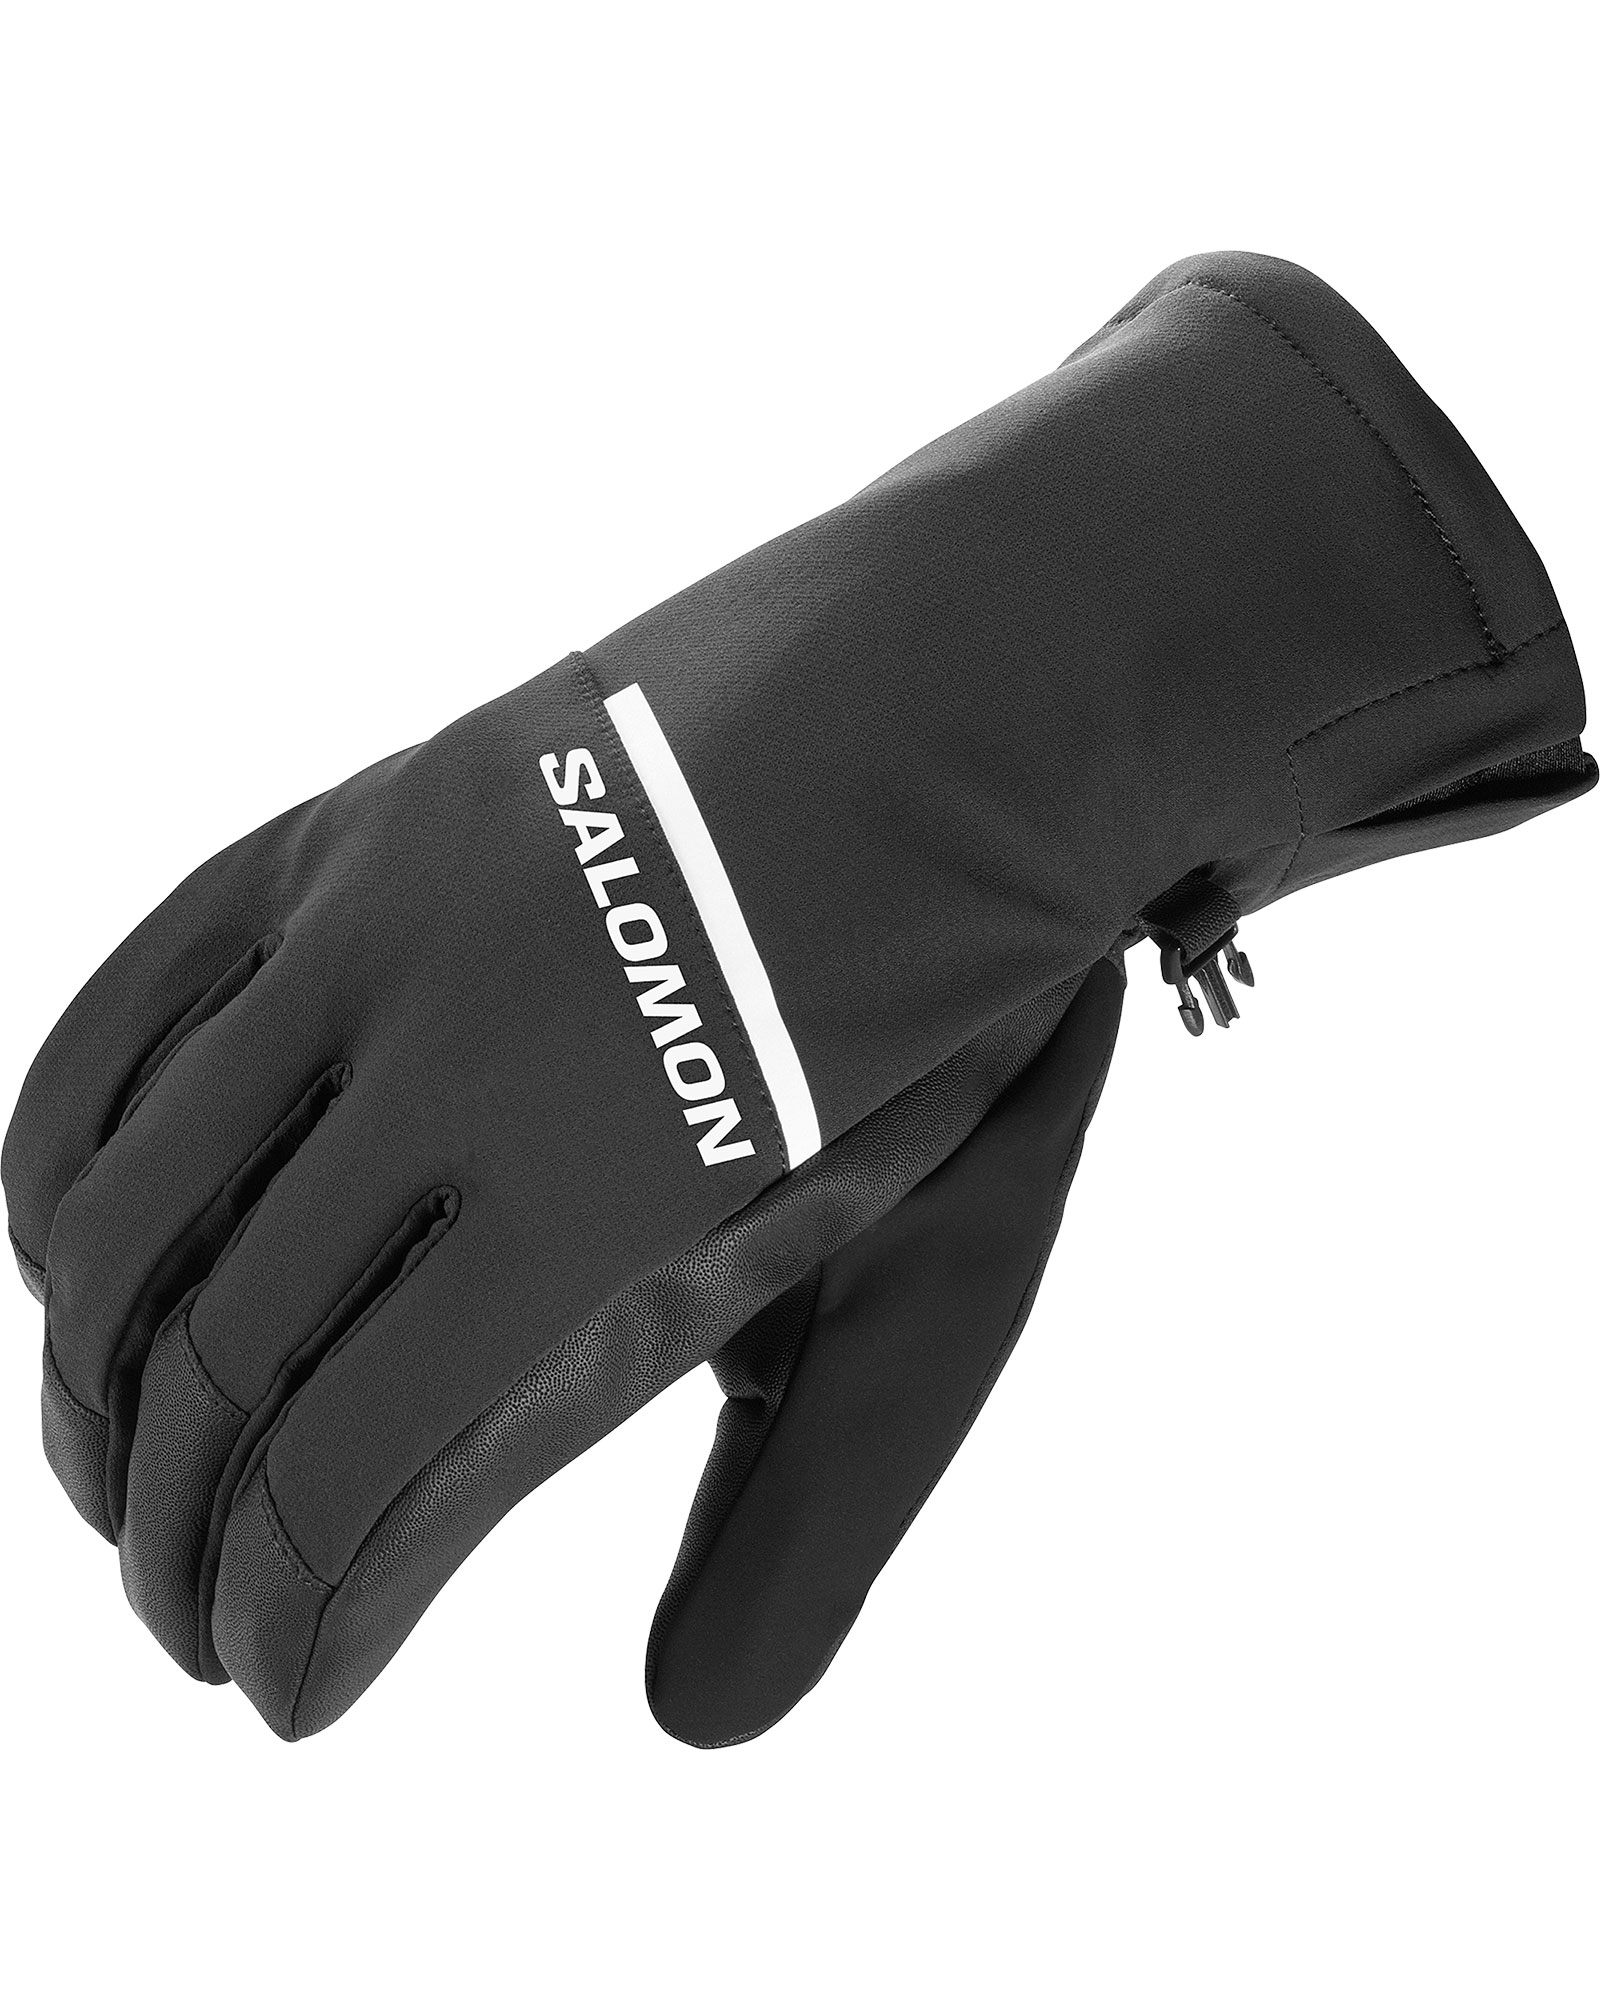 Salomon Propeller One Gloves